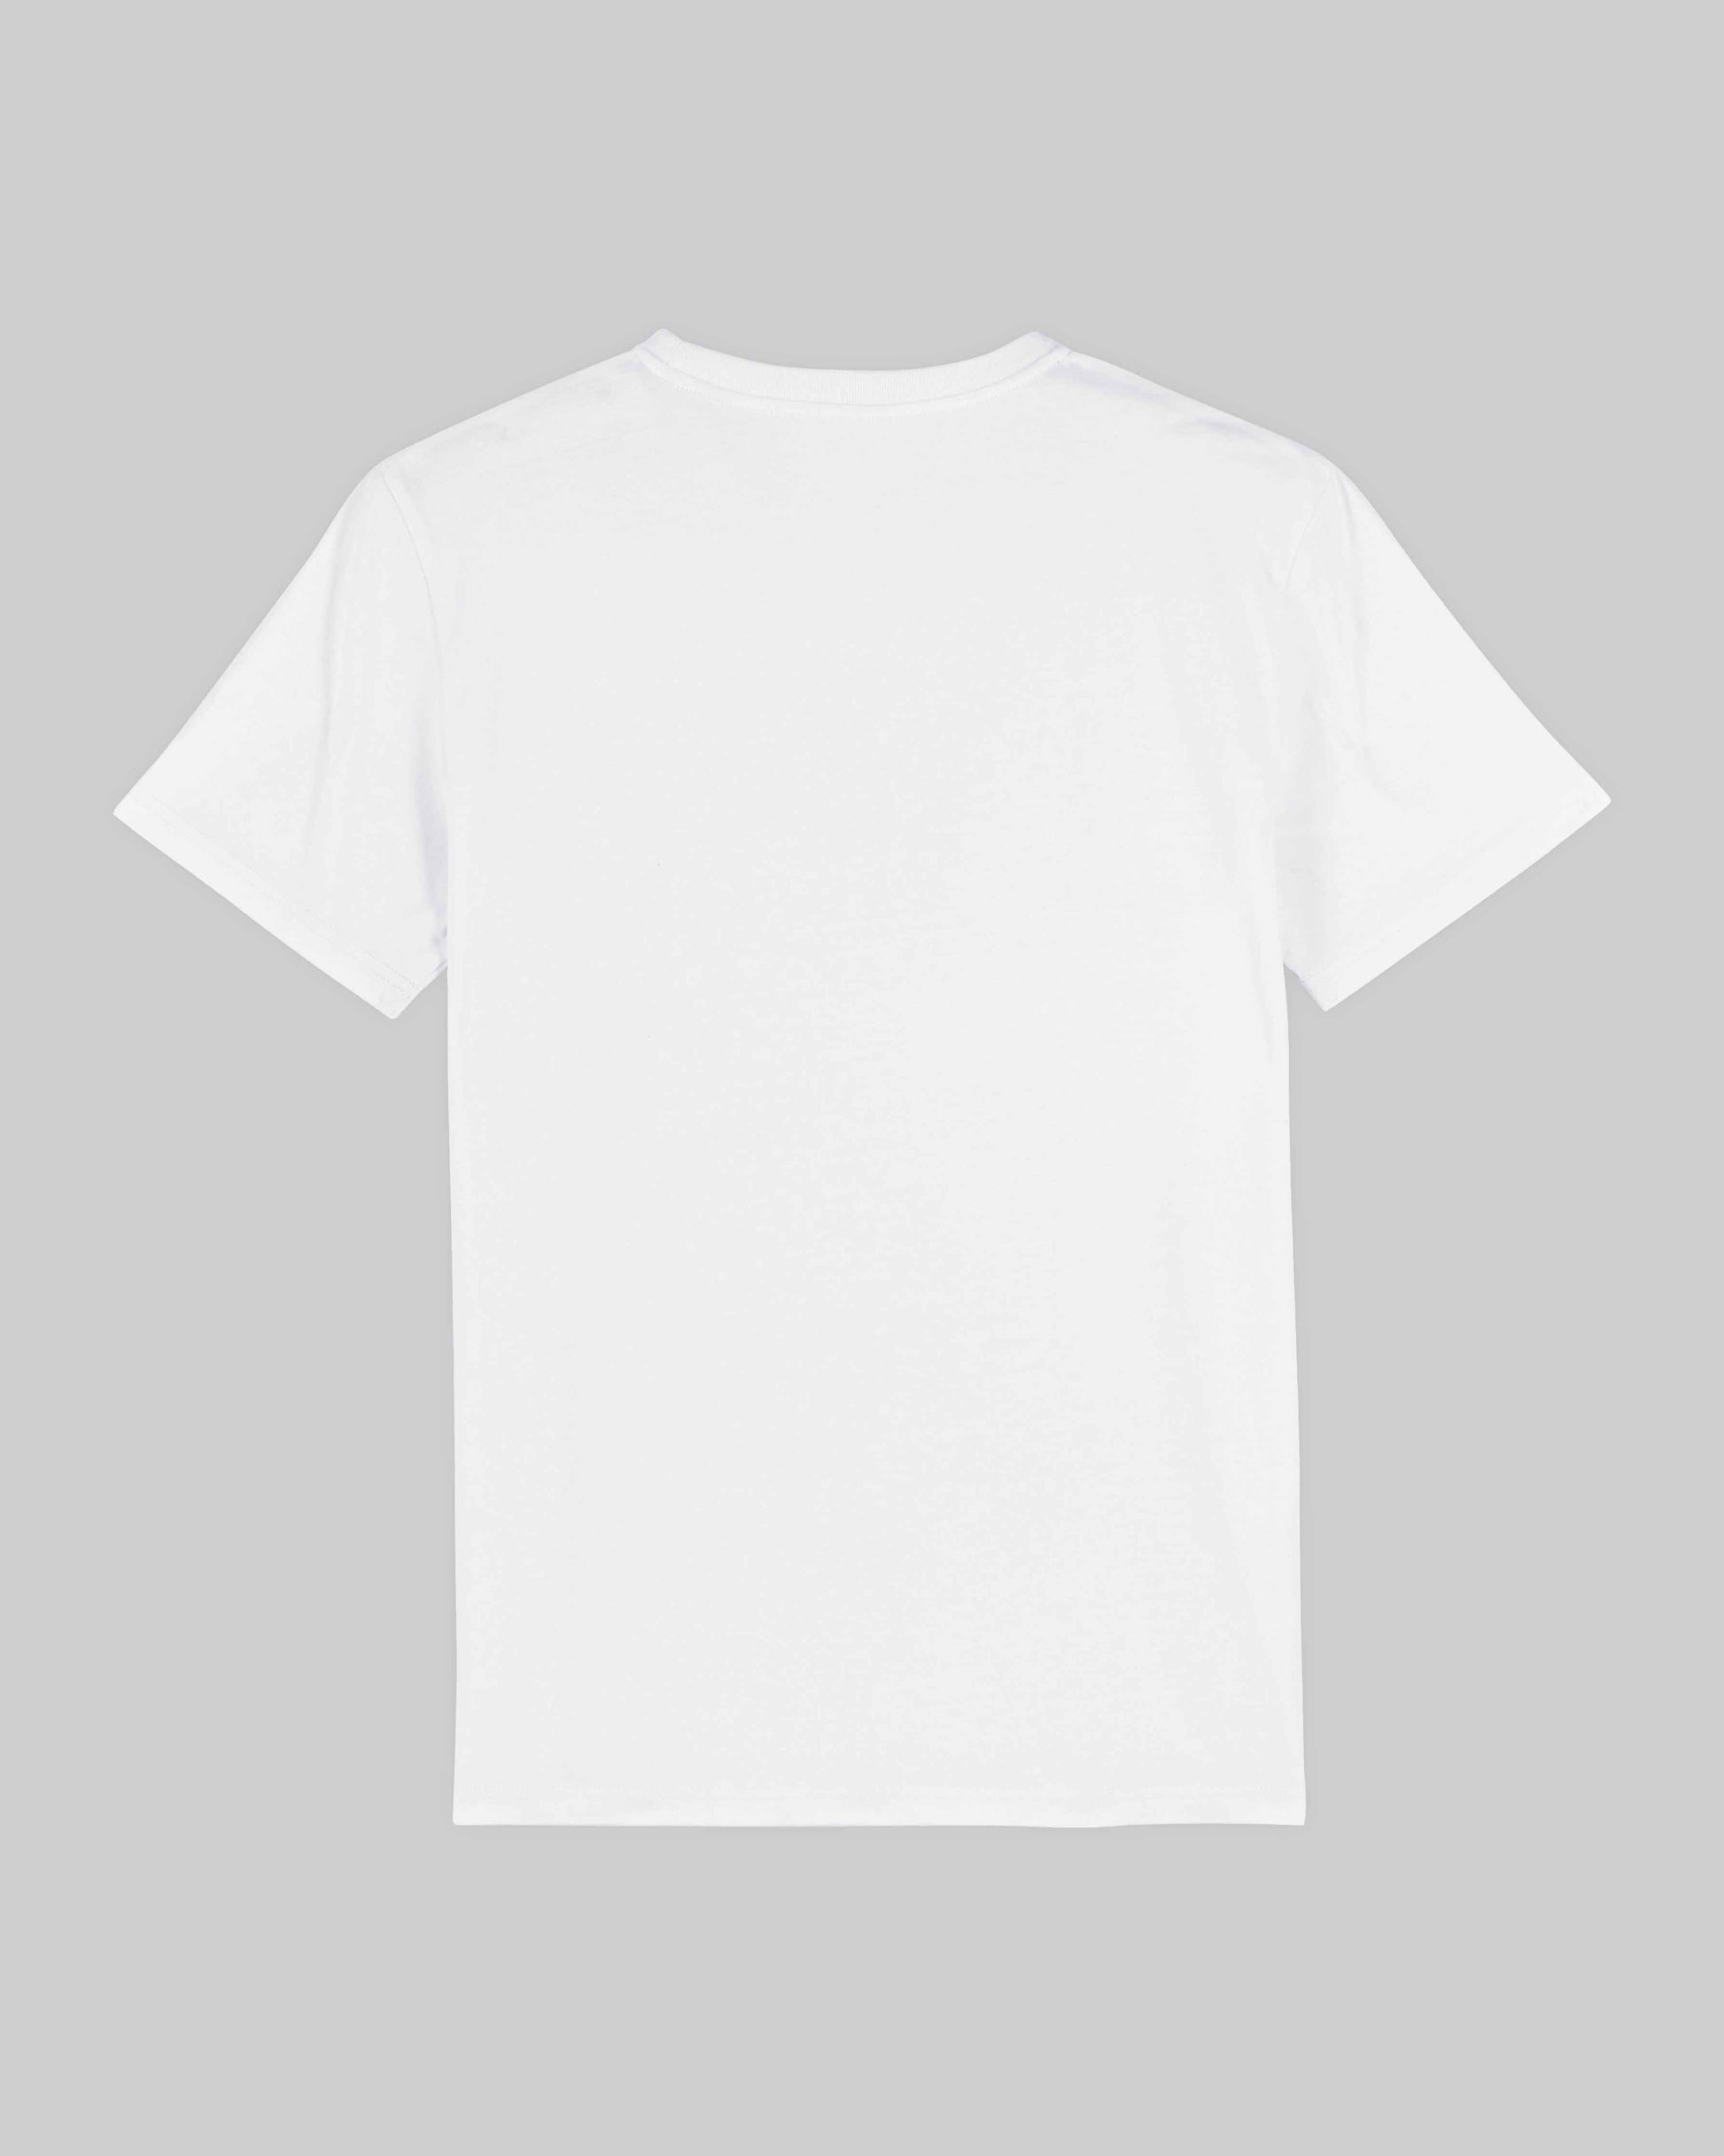 EINHORST® unisex Organic Shirt in Weiß mit dem Motiv "queer Regenbogen" in der Kombination schwarzer Regenbogen mit schwarzer Schrift, Bild von Shirt von hinten